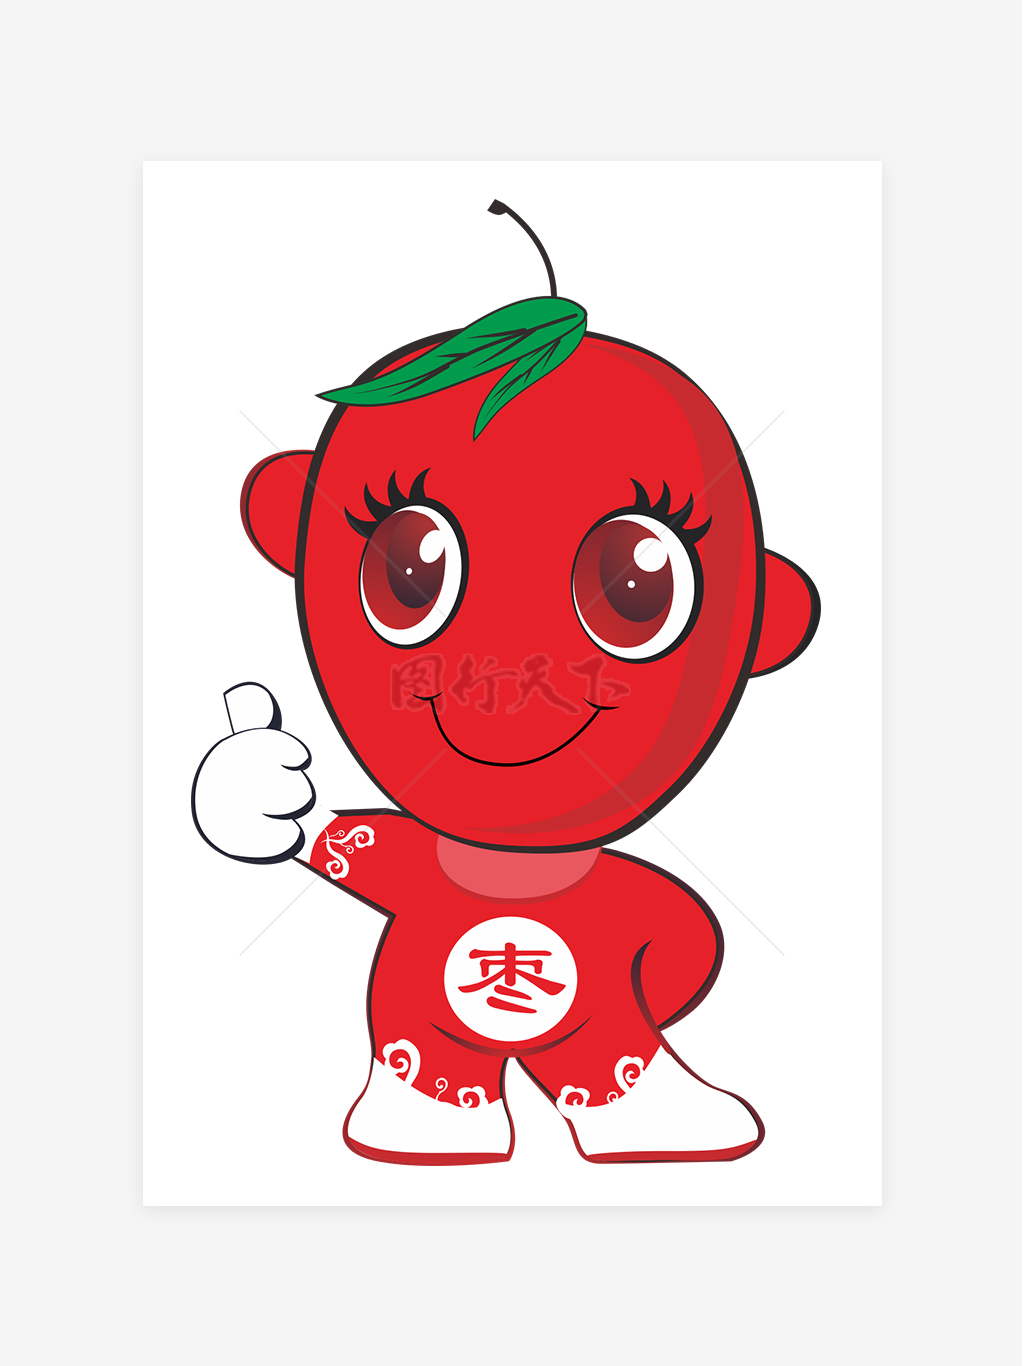 可爱卡通南蜜大红枣标志系列表情符号人物png素材